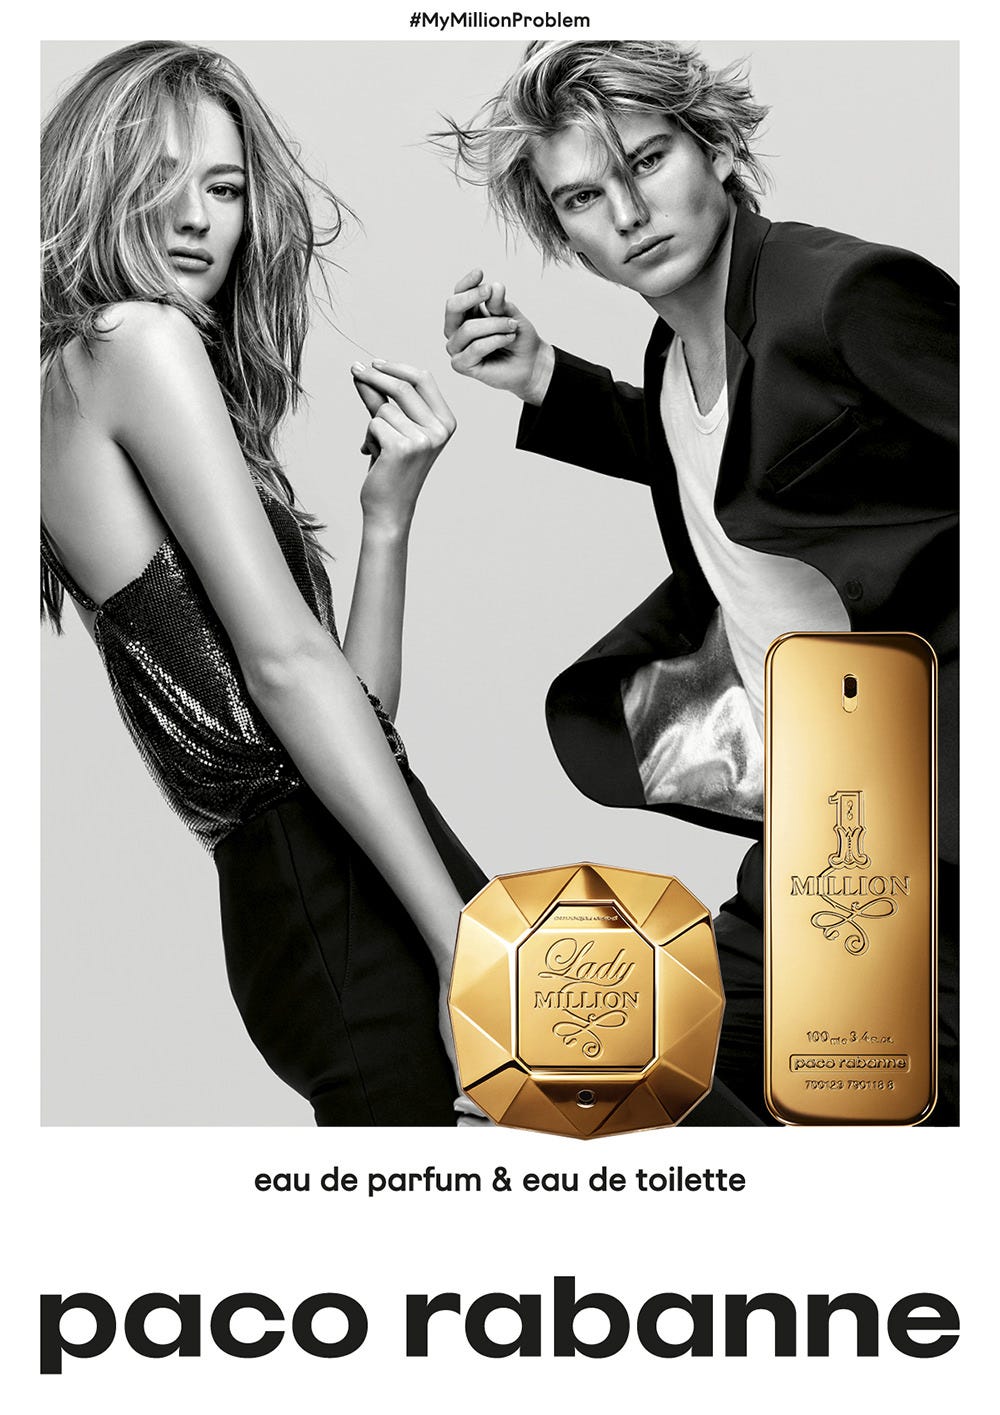 Paco Rabanne: Paco Rabanne poursuit avec Mazarine la saga de ses parfums  icôniques. Fantasme et humour pour la nouvelle campagne Million.